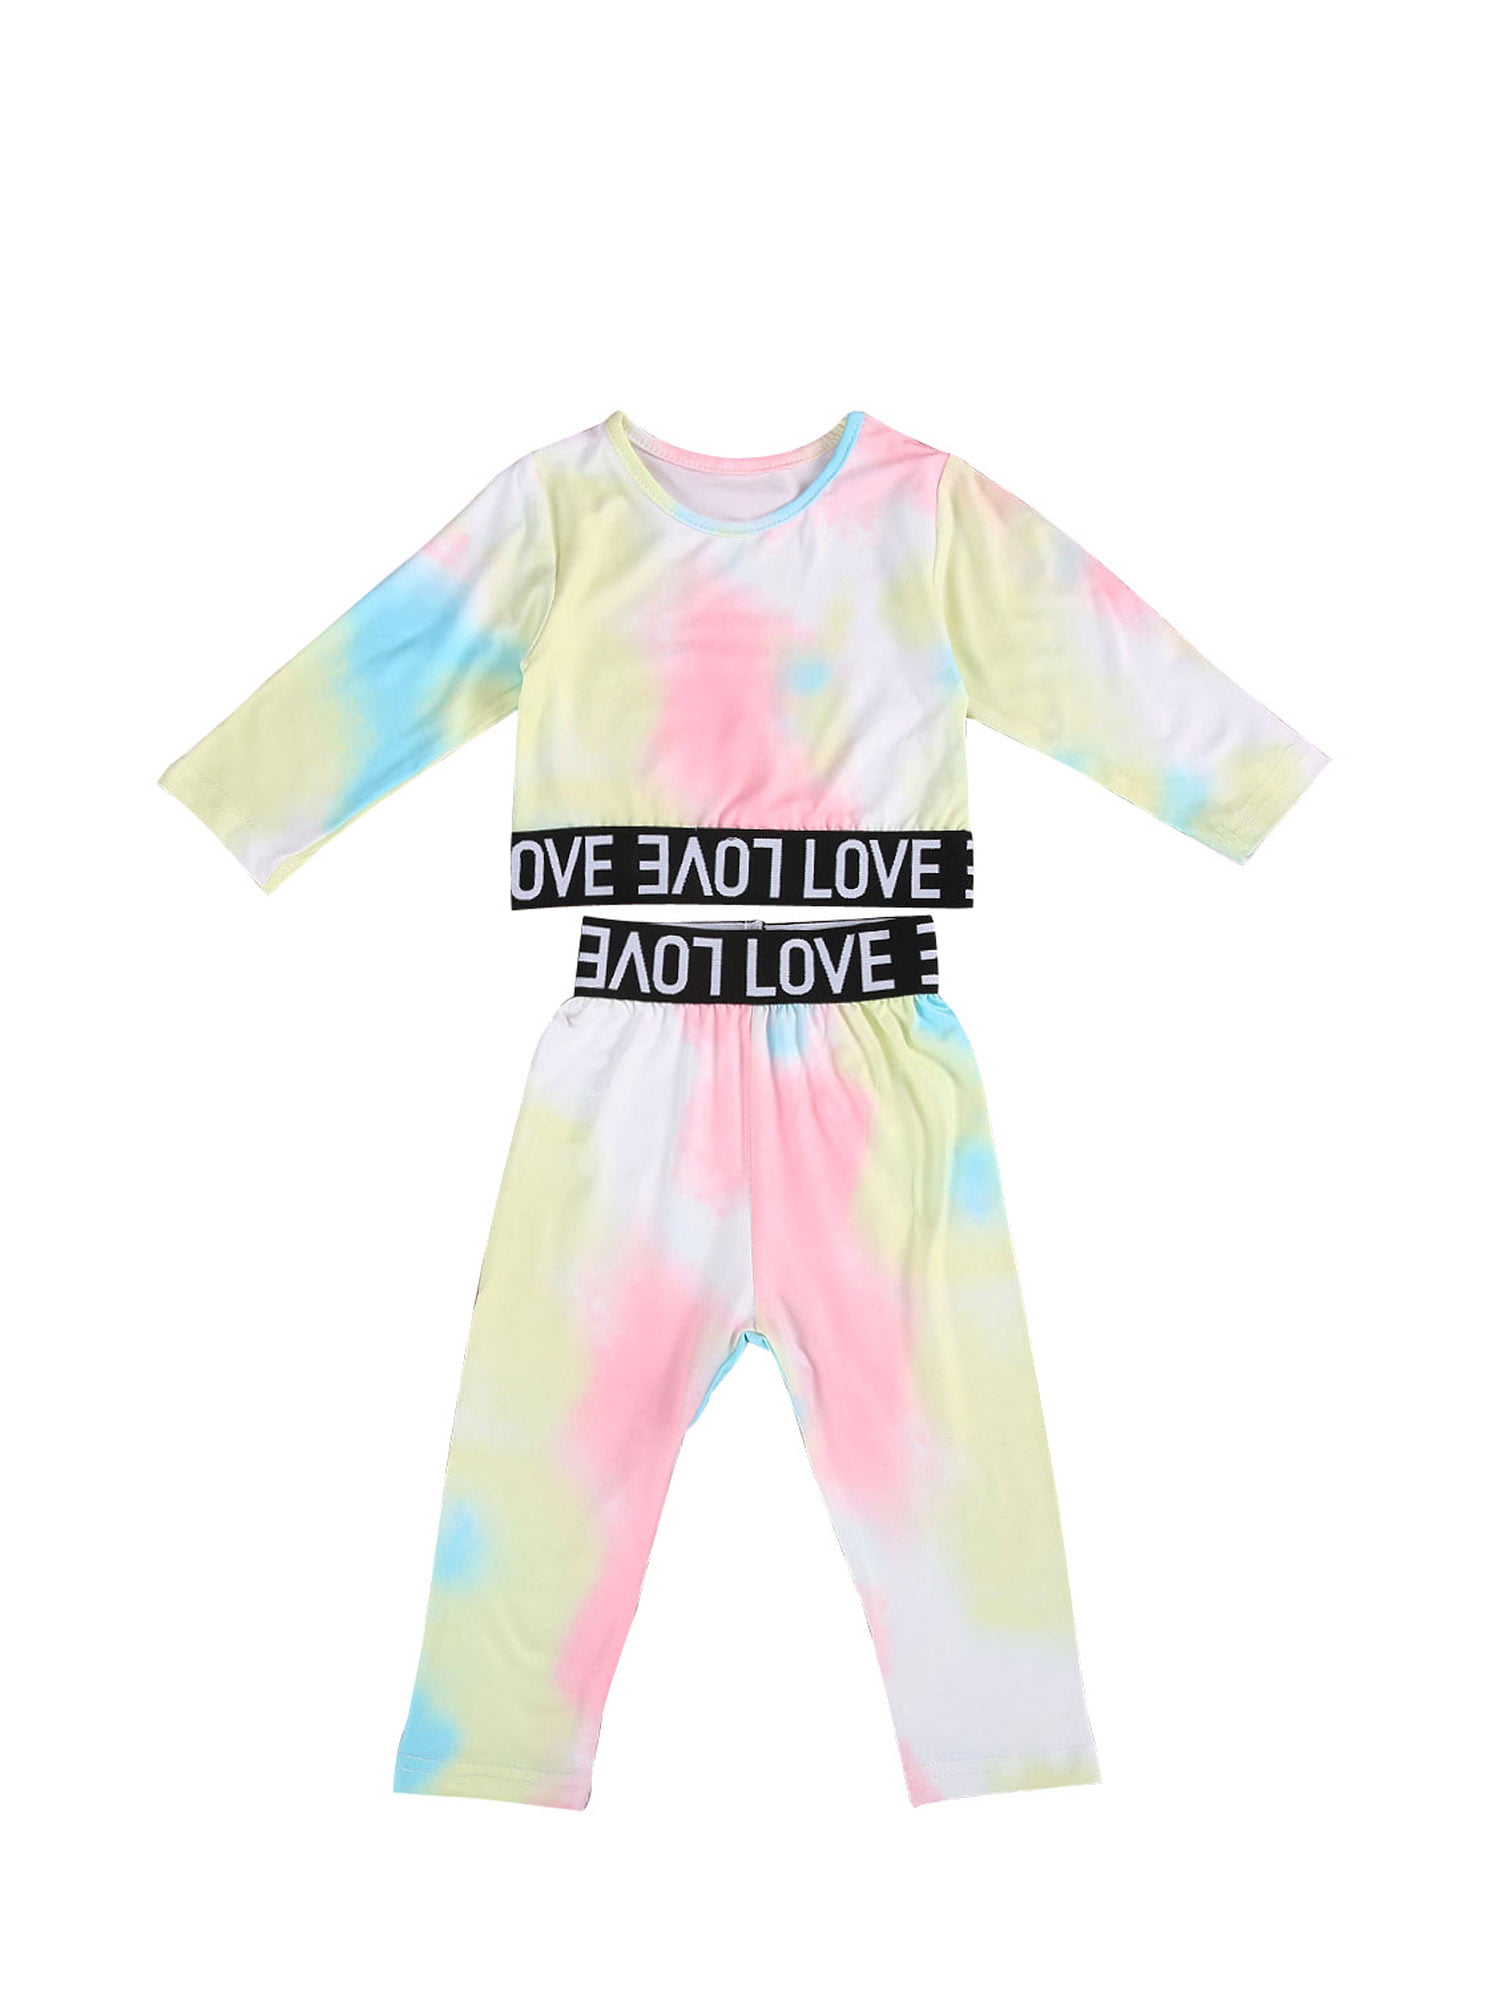 suomate Toddler Baby Girl Boy Tie Dye Print Long Sleeve Shirt Pullover Top Pants Leggings Pajamas Set